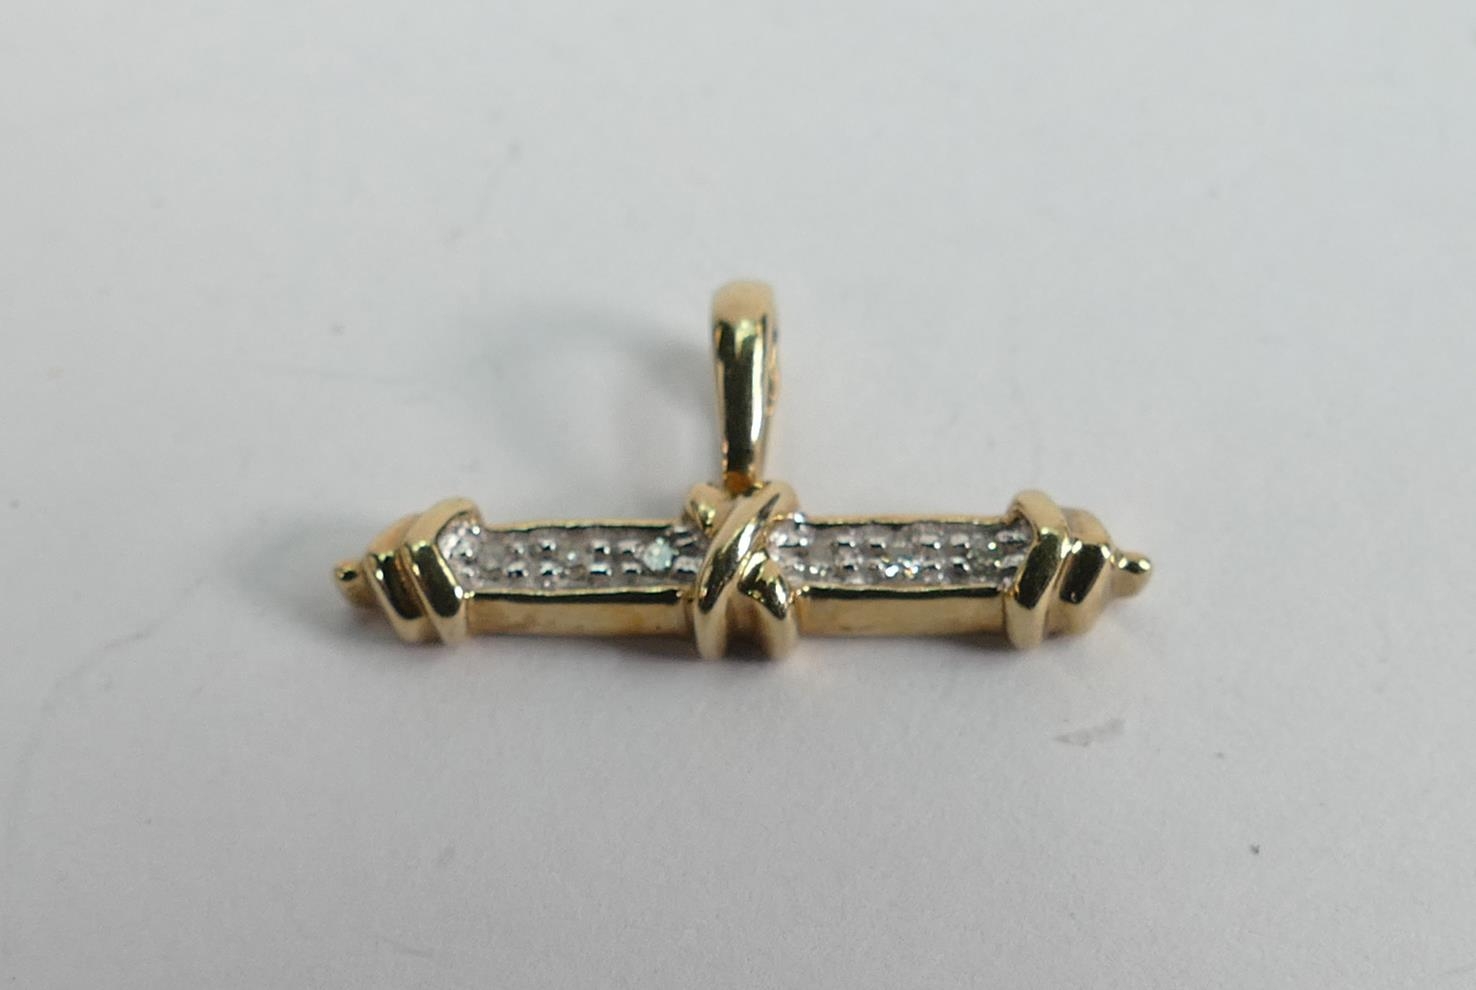 9ct gold diamond pendant, 1.4g: